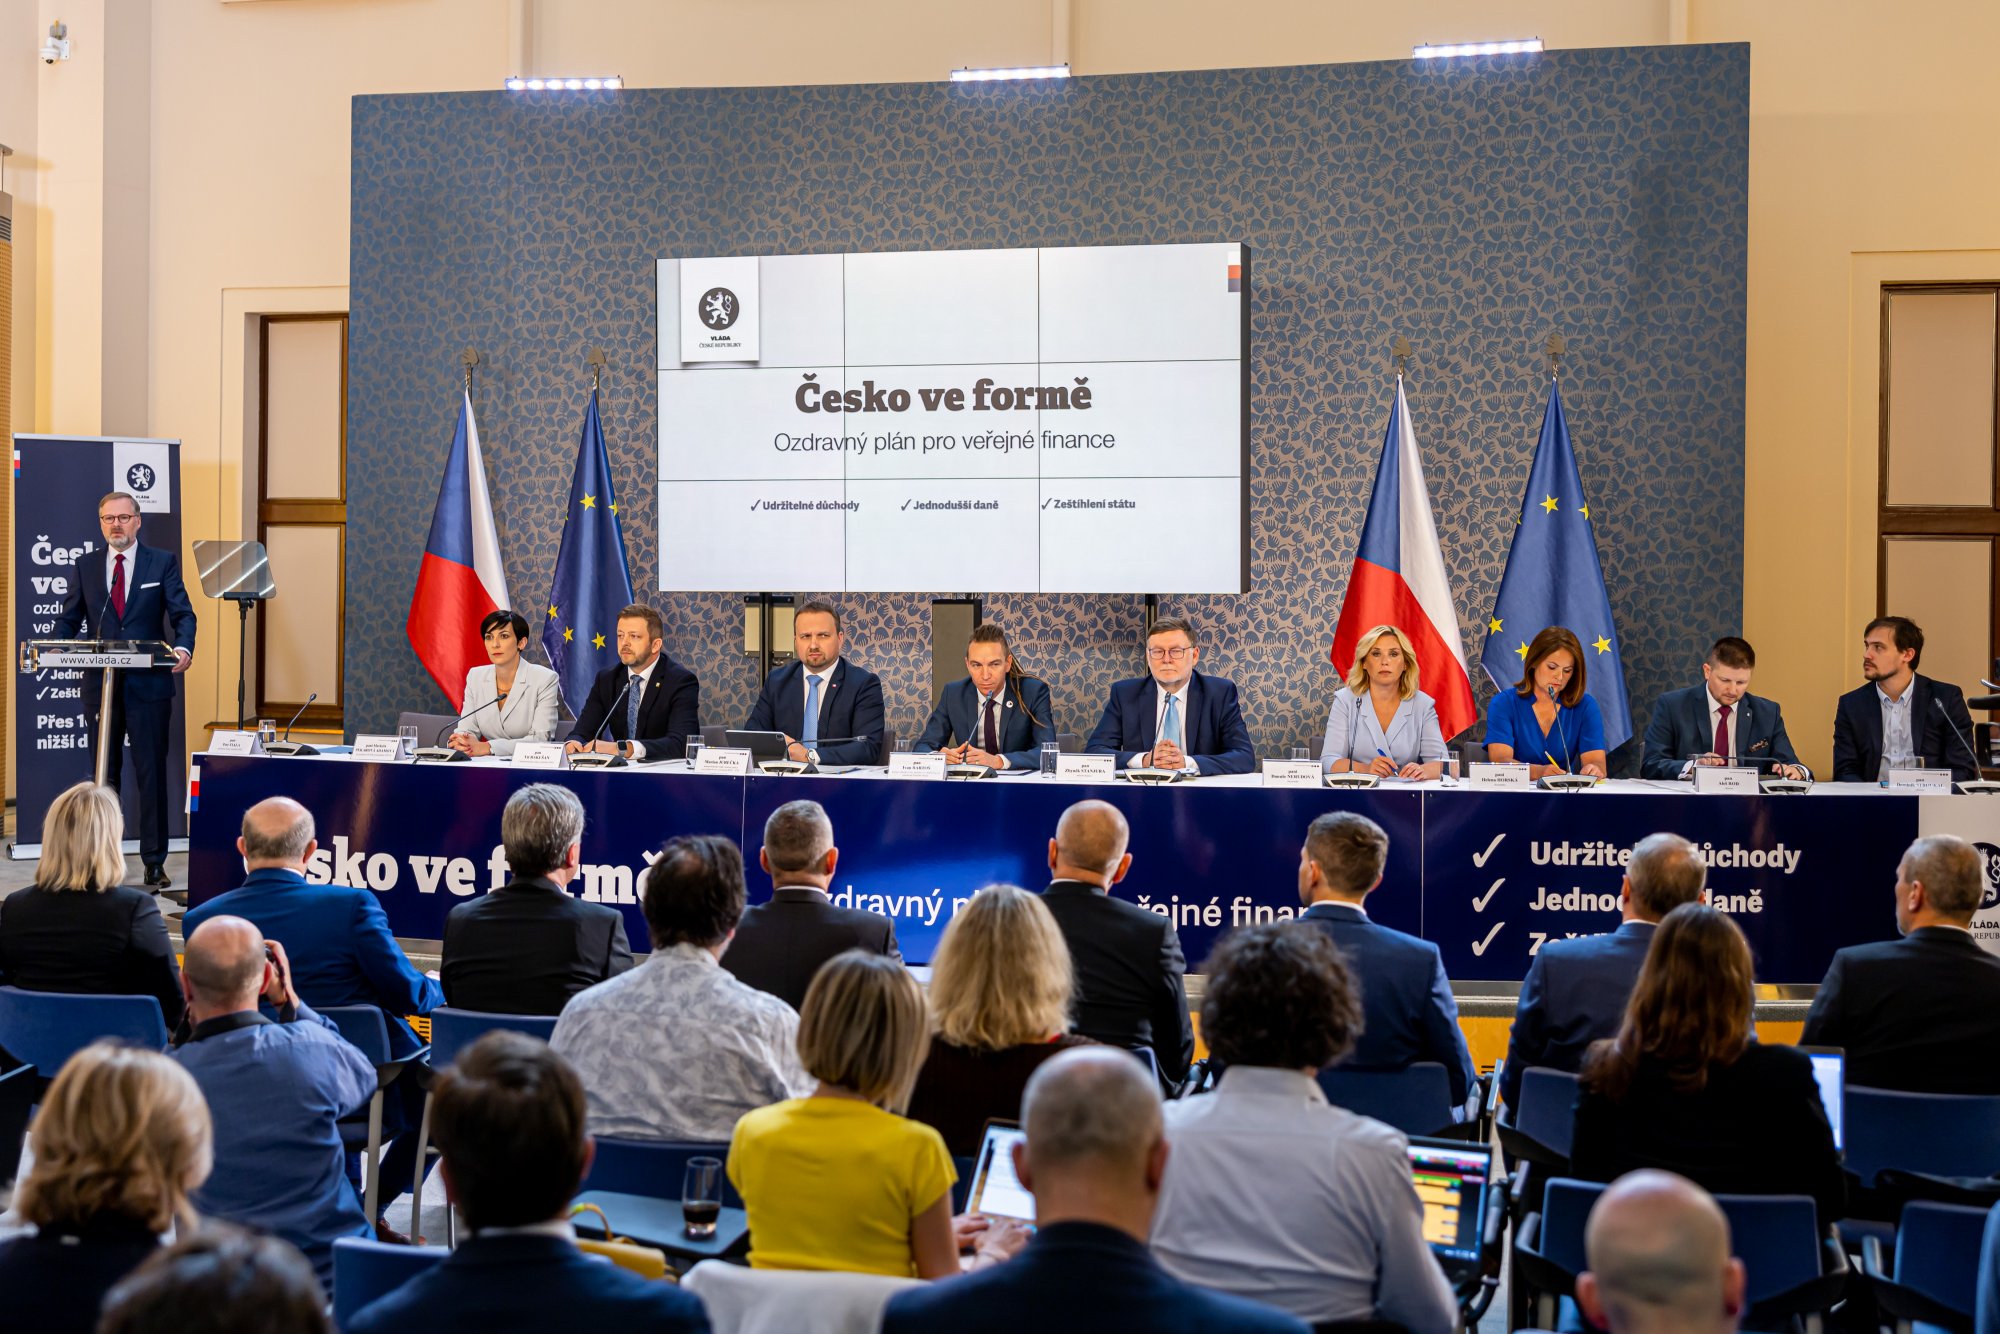 Vláda představila ozdravný plán pro veřejné finance Česko ve formě